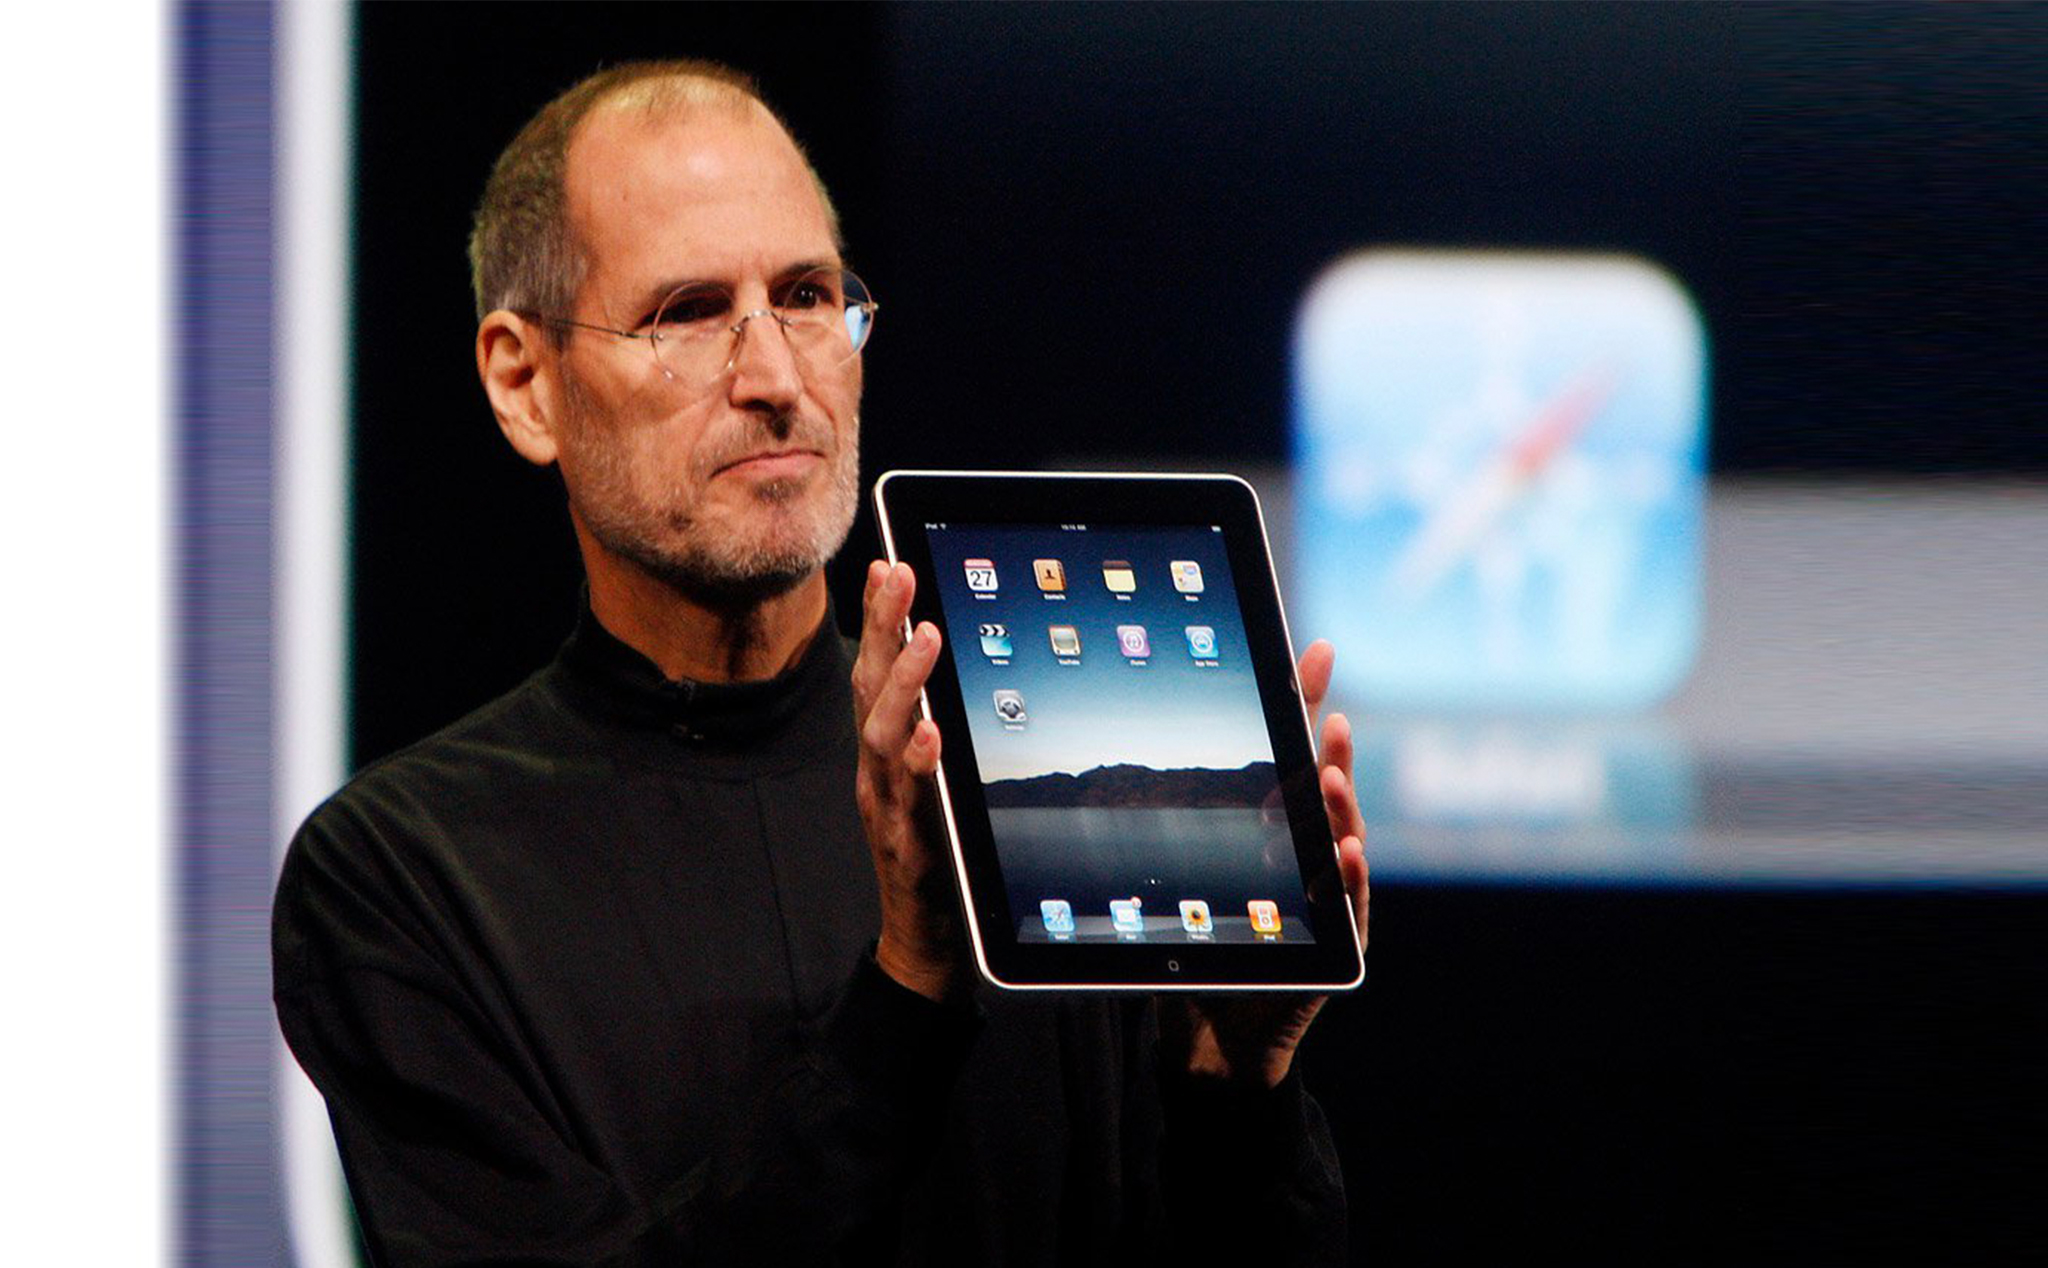 Thời gian này 9 năm về trước, chúng ta đã có iPad thế hệ đầu tiên